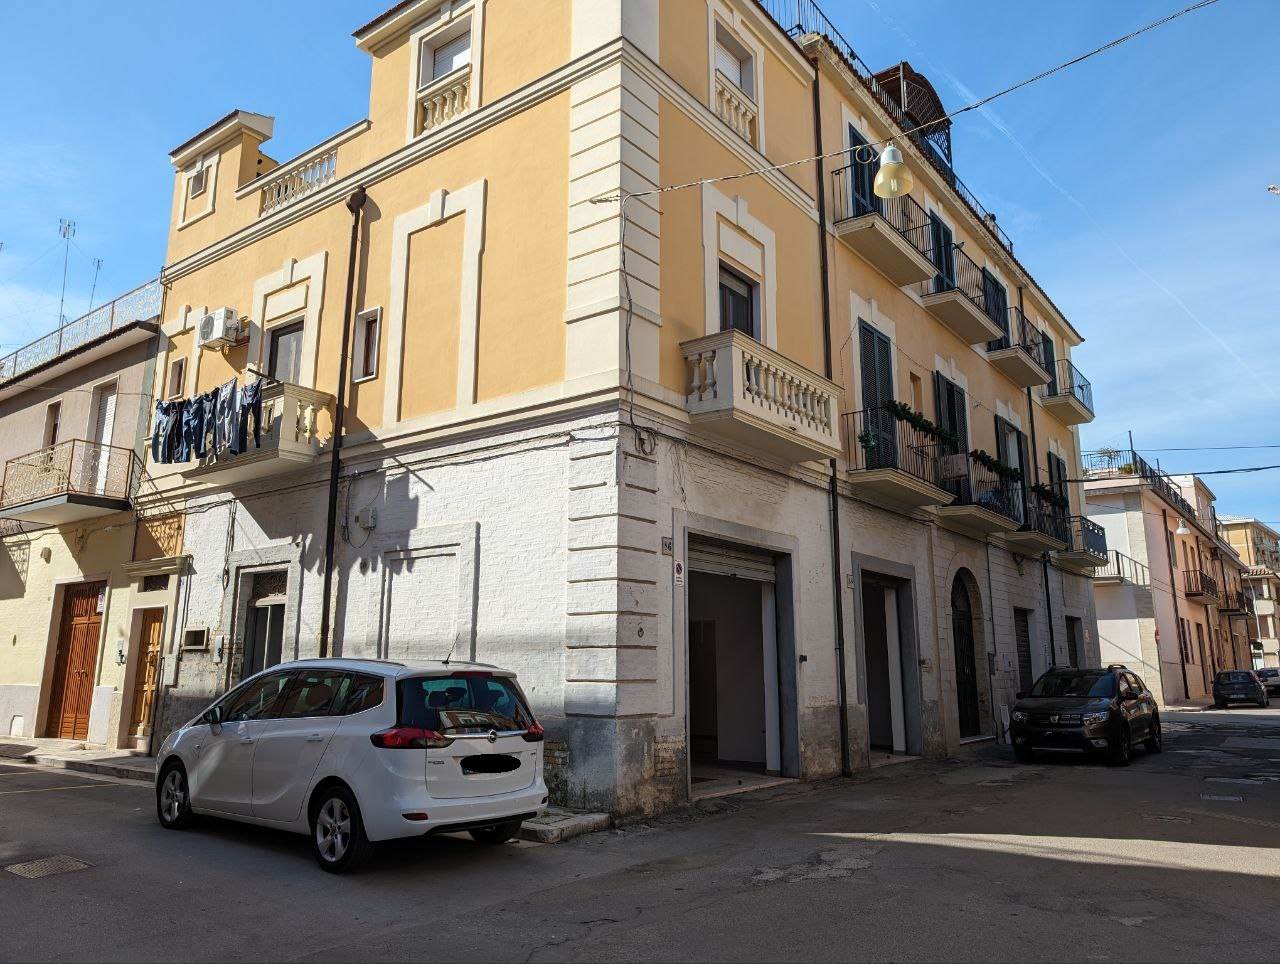 Immobile Commerciale in vendita a San Severo, 3 locali, prezzo € 85.000 | PortaleAgenzieImmobiliari.it